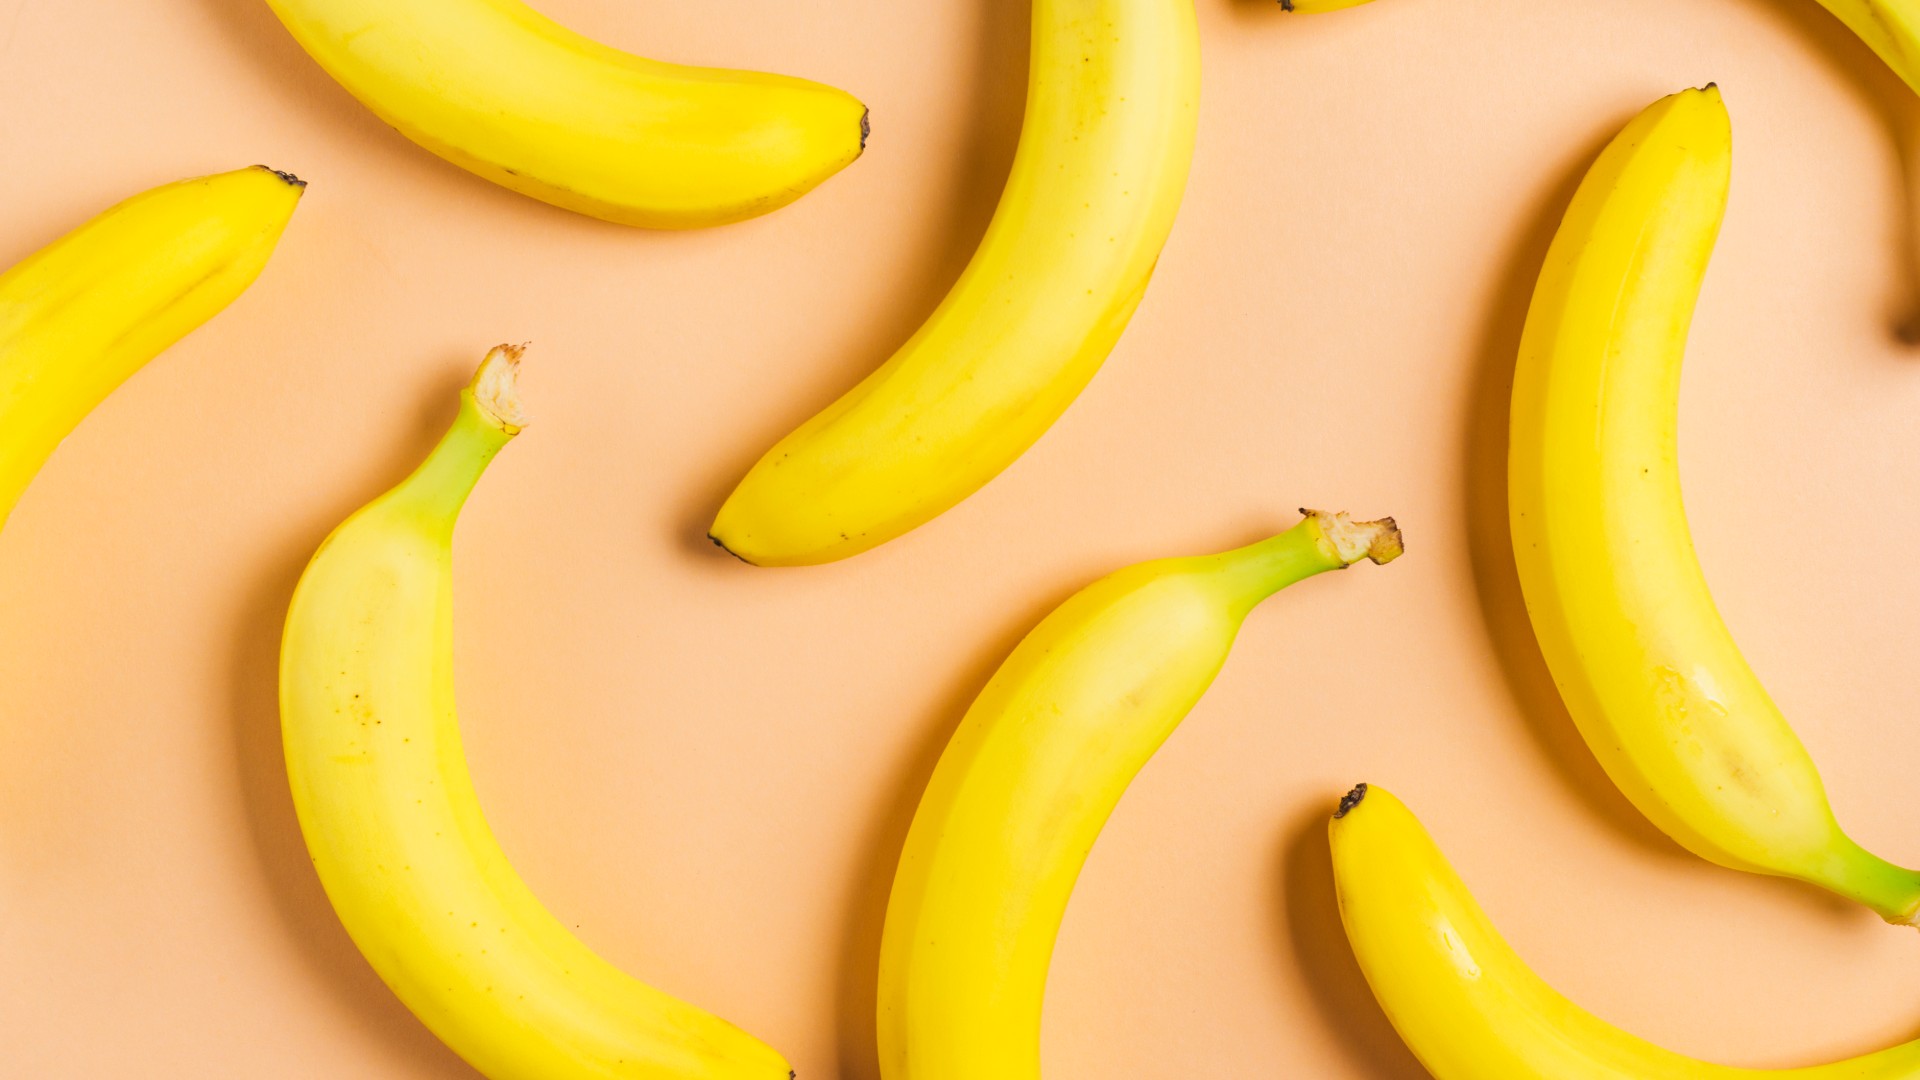 Foto de capa do artigo "Banana: quais as propriedades, tipos e benefícios?"